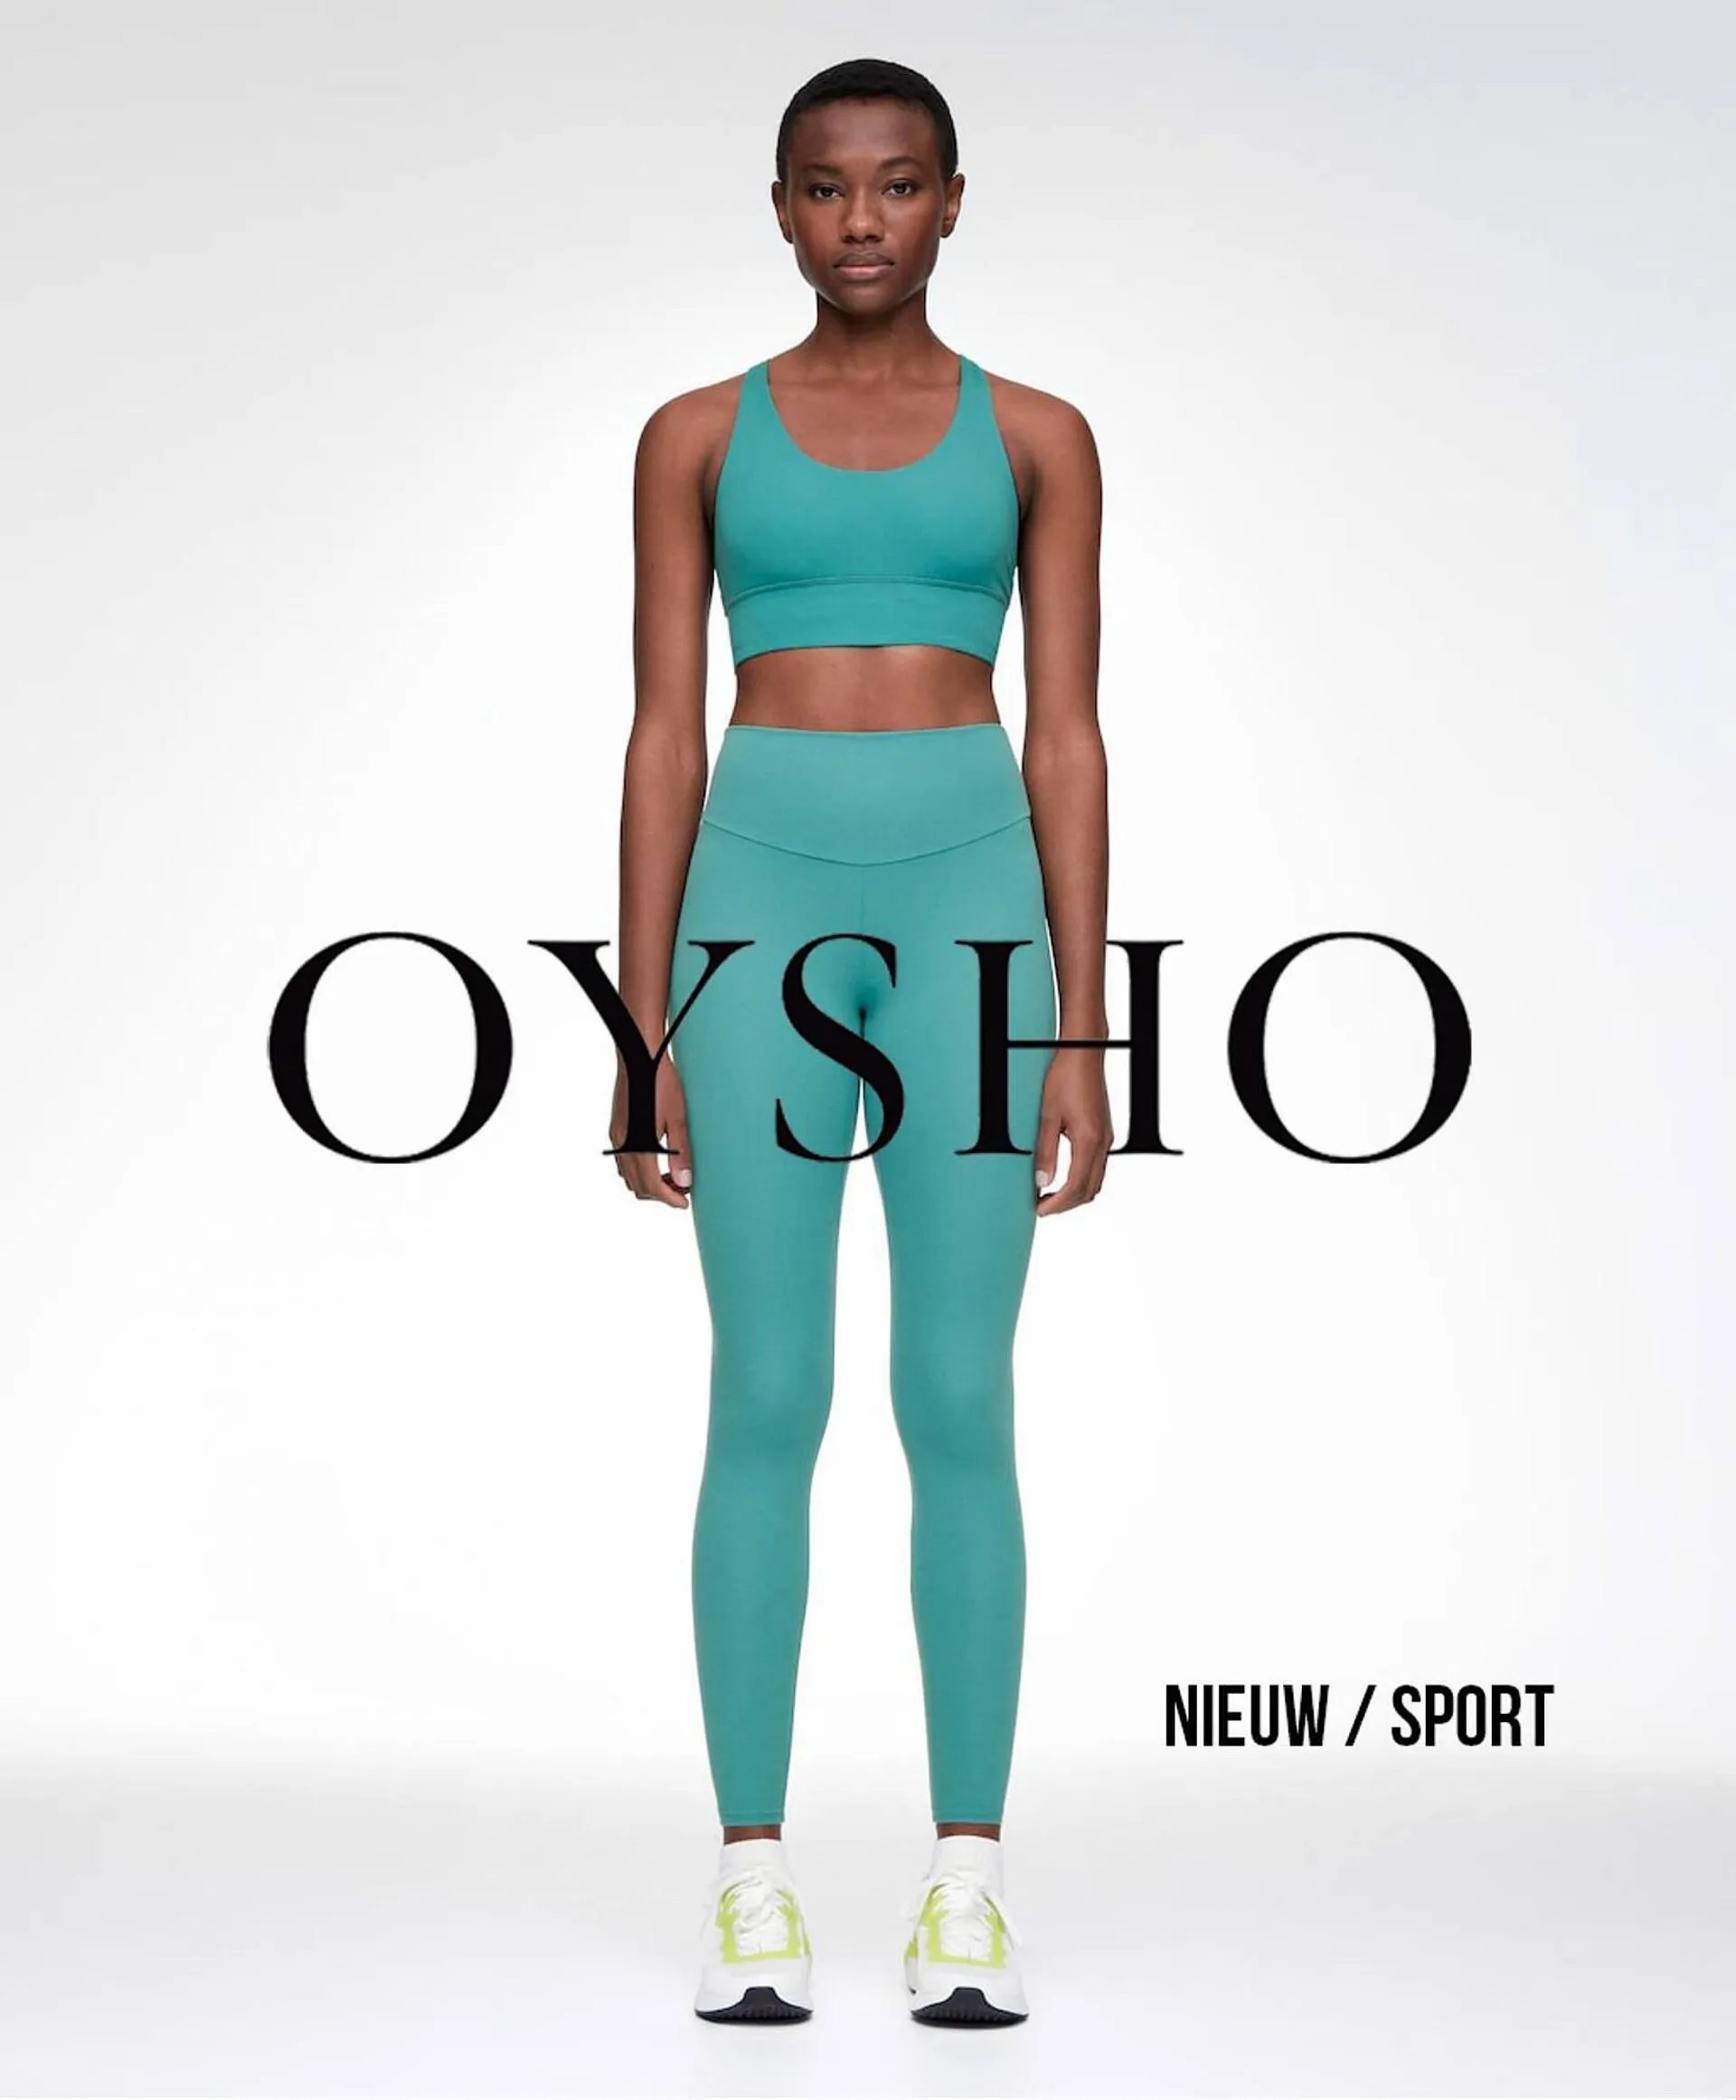 Oysho folder - 1